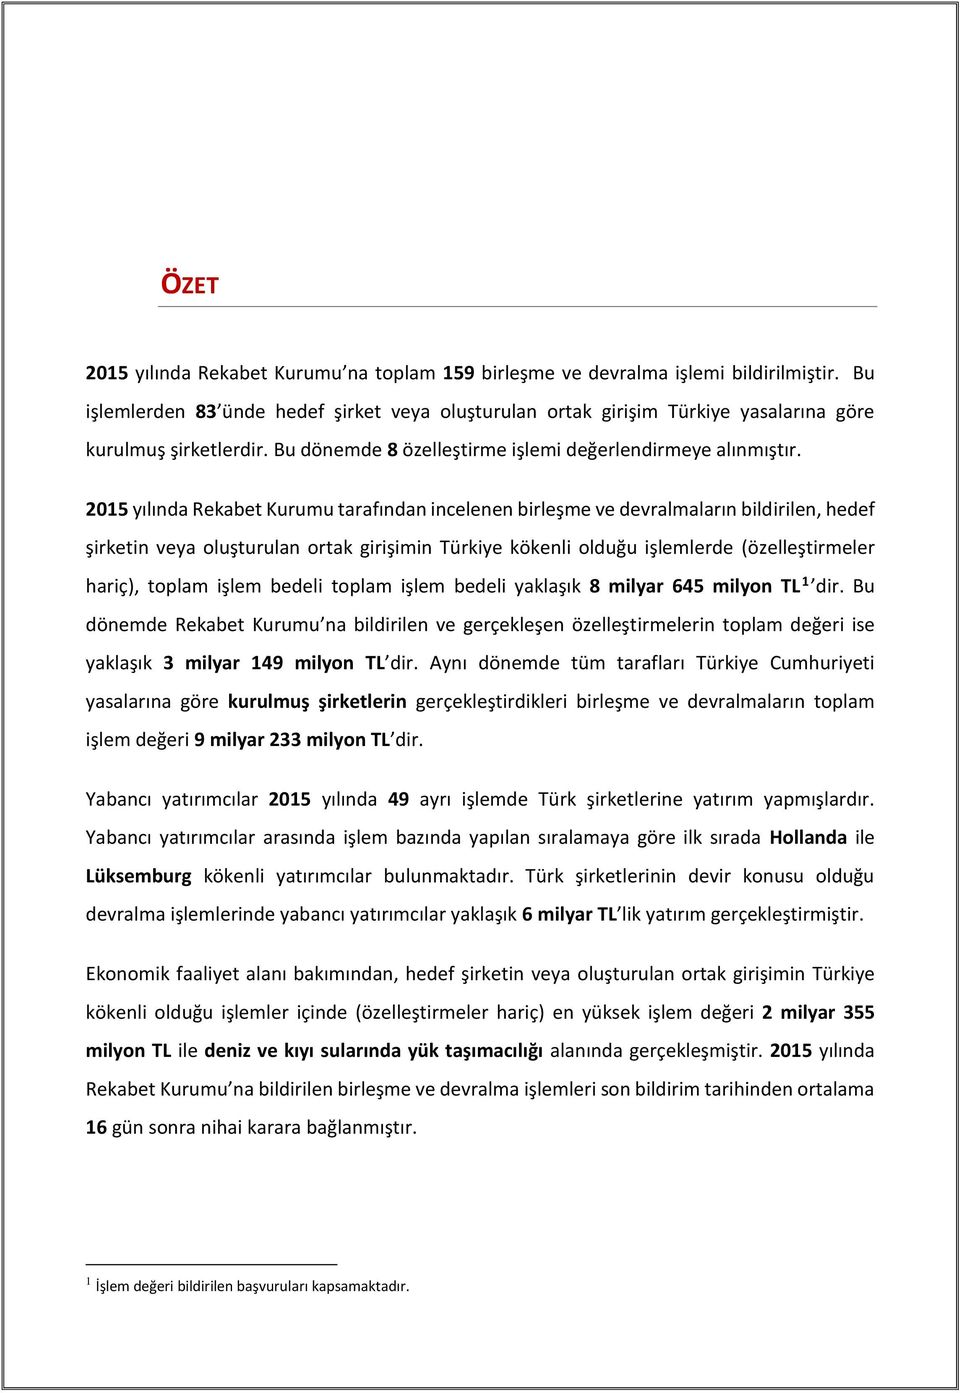 2015 yılında Rekabet Kurumu tarafından incelenen birleşme ve devralmaların bildirilen, hedef şirketin veya oluşturulan ortak girişimin Türkiye kökenli olduğu işlemlerde (özelleştirmeler hariç),